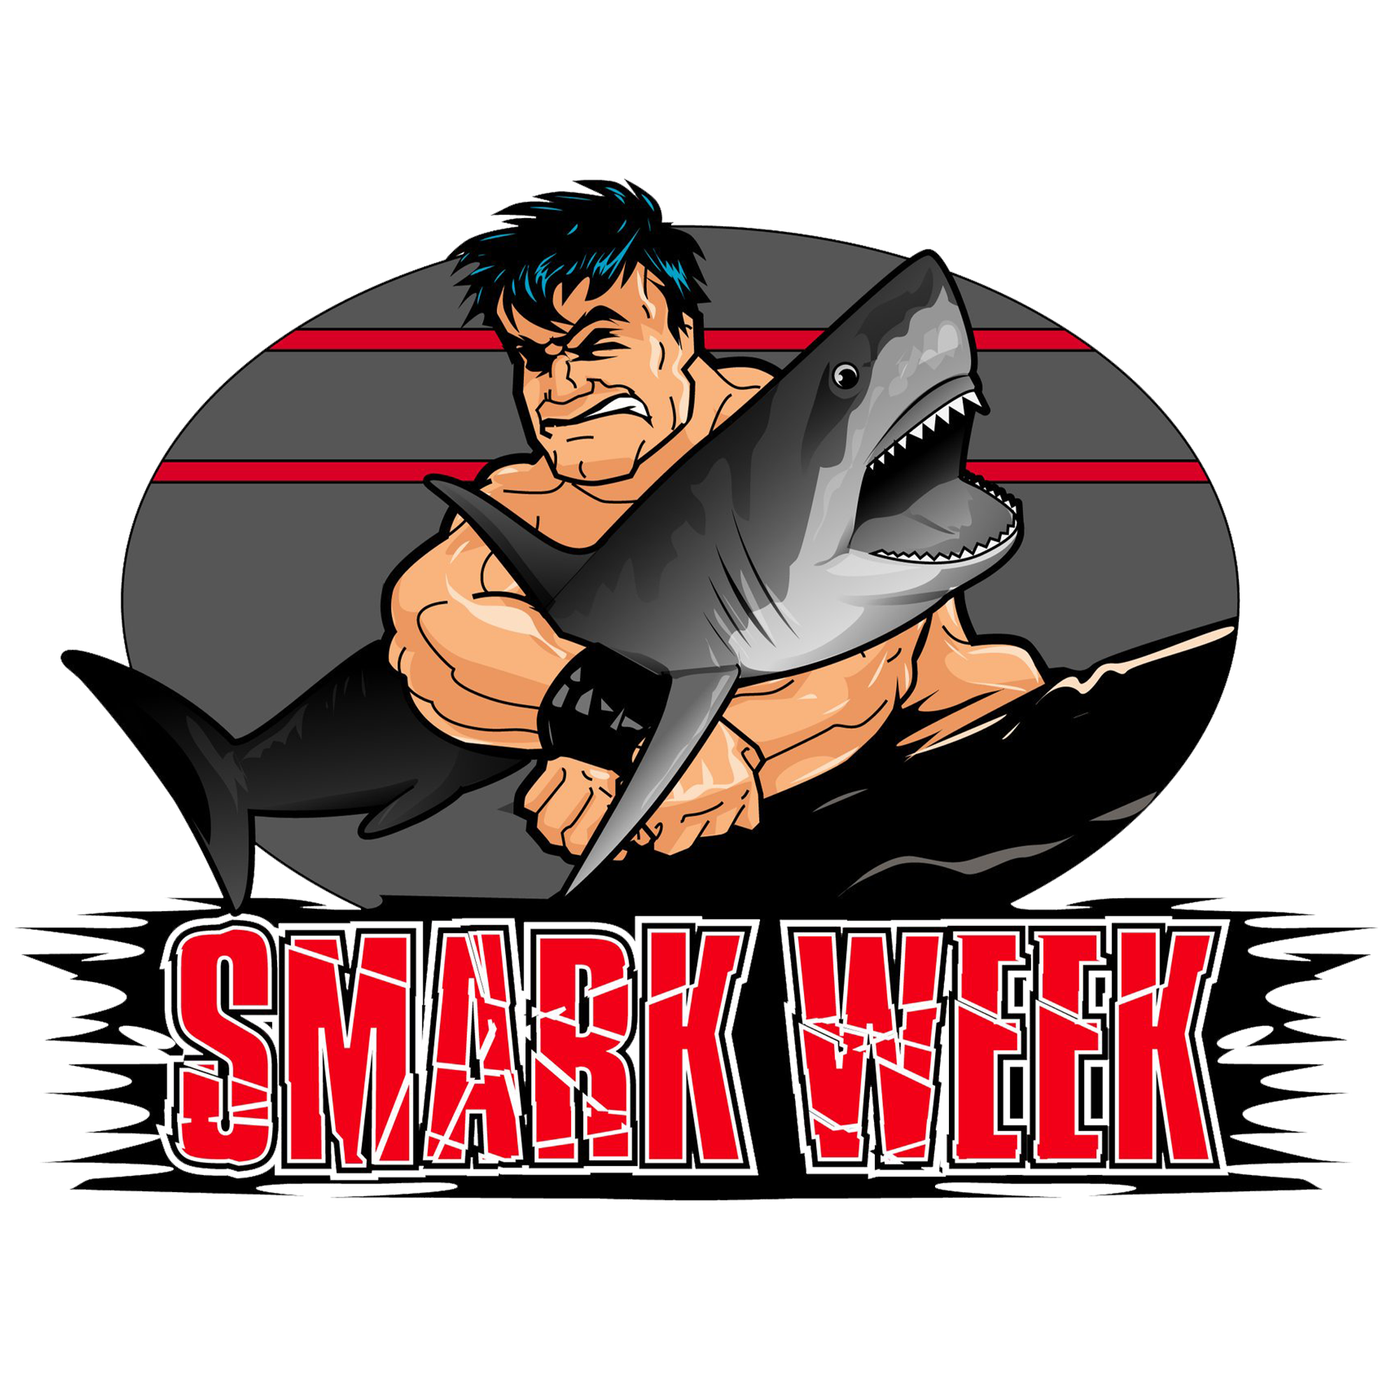 Smark Week